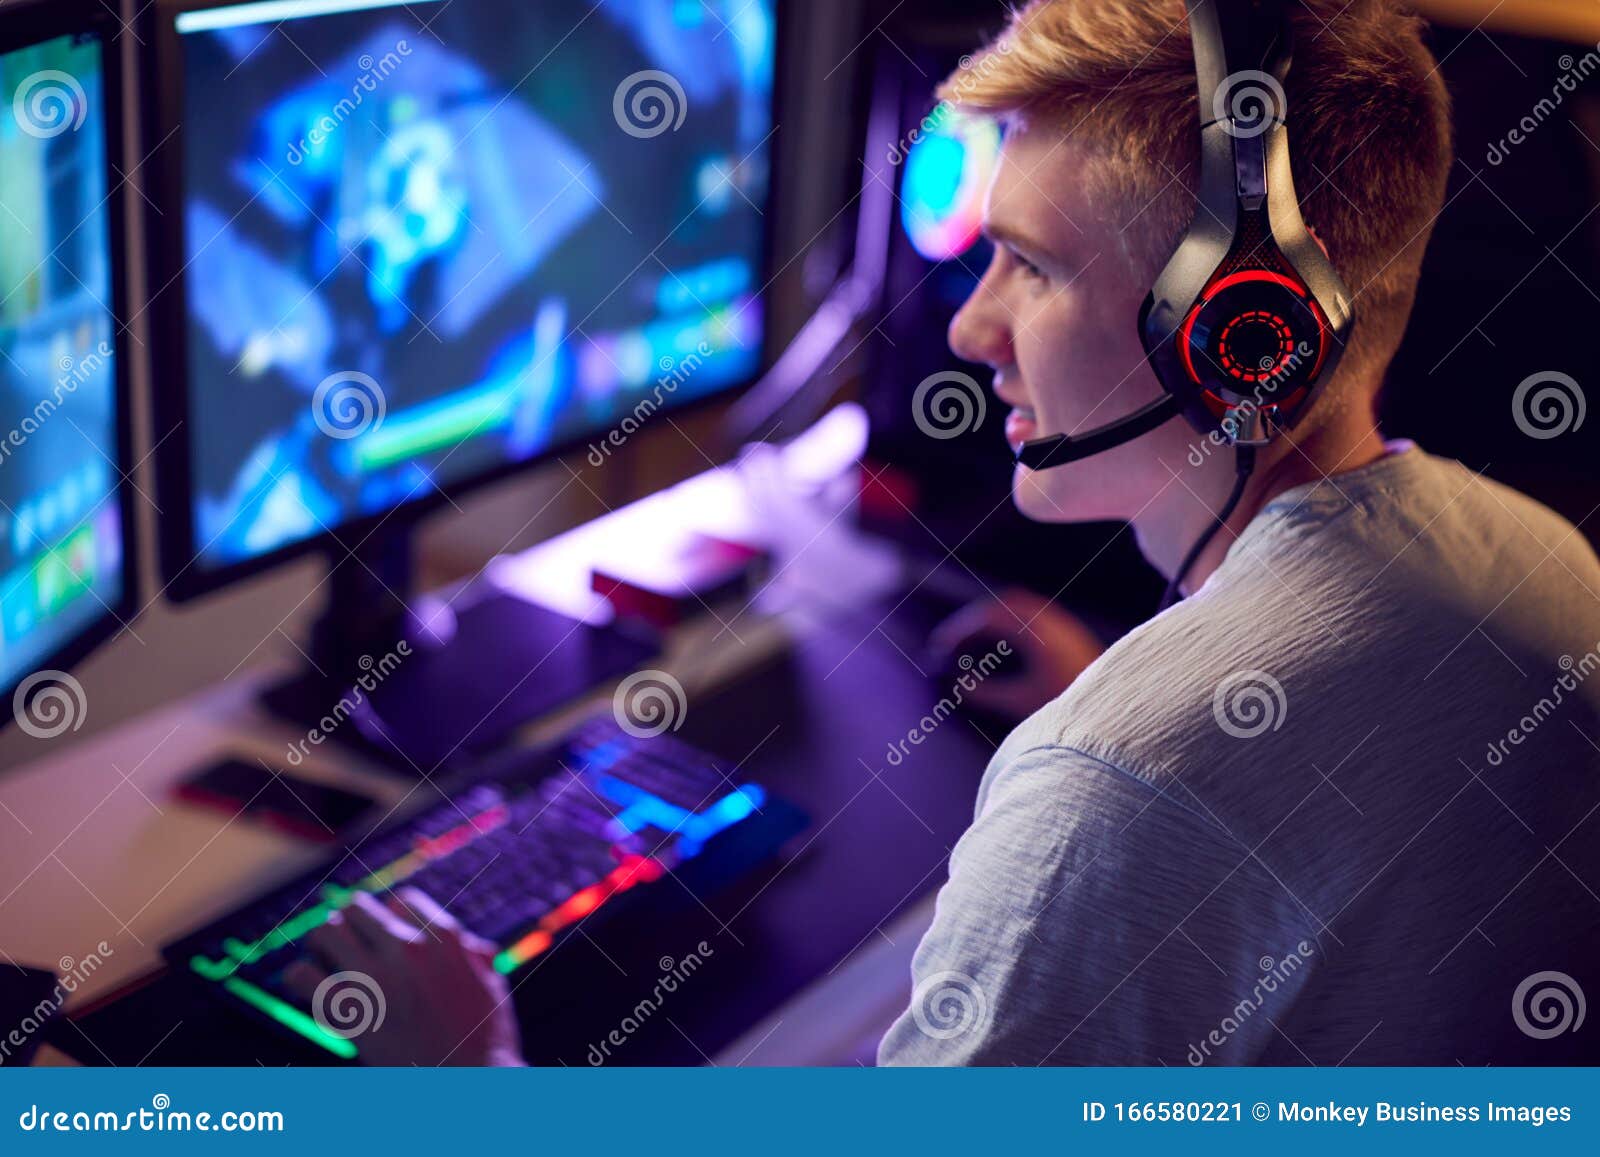 O Menino Usando Um Laptop Para Jogar Jogos Online. O Cara Está Jogando No  Console. Foto Royalty Free, Gravuras, Imagens e Banco de fotografias. Image  149701909